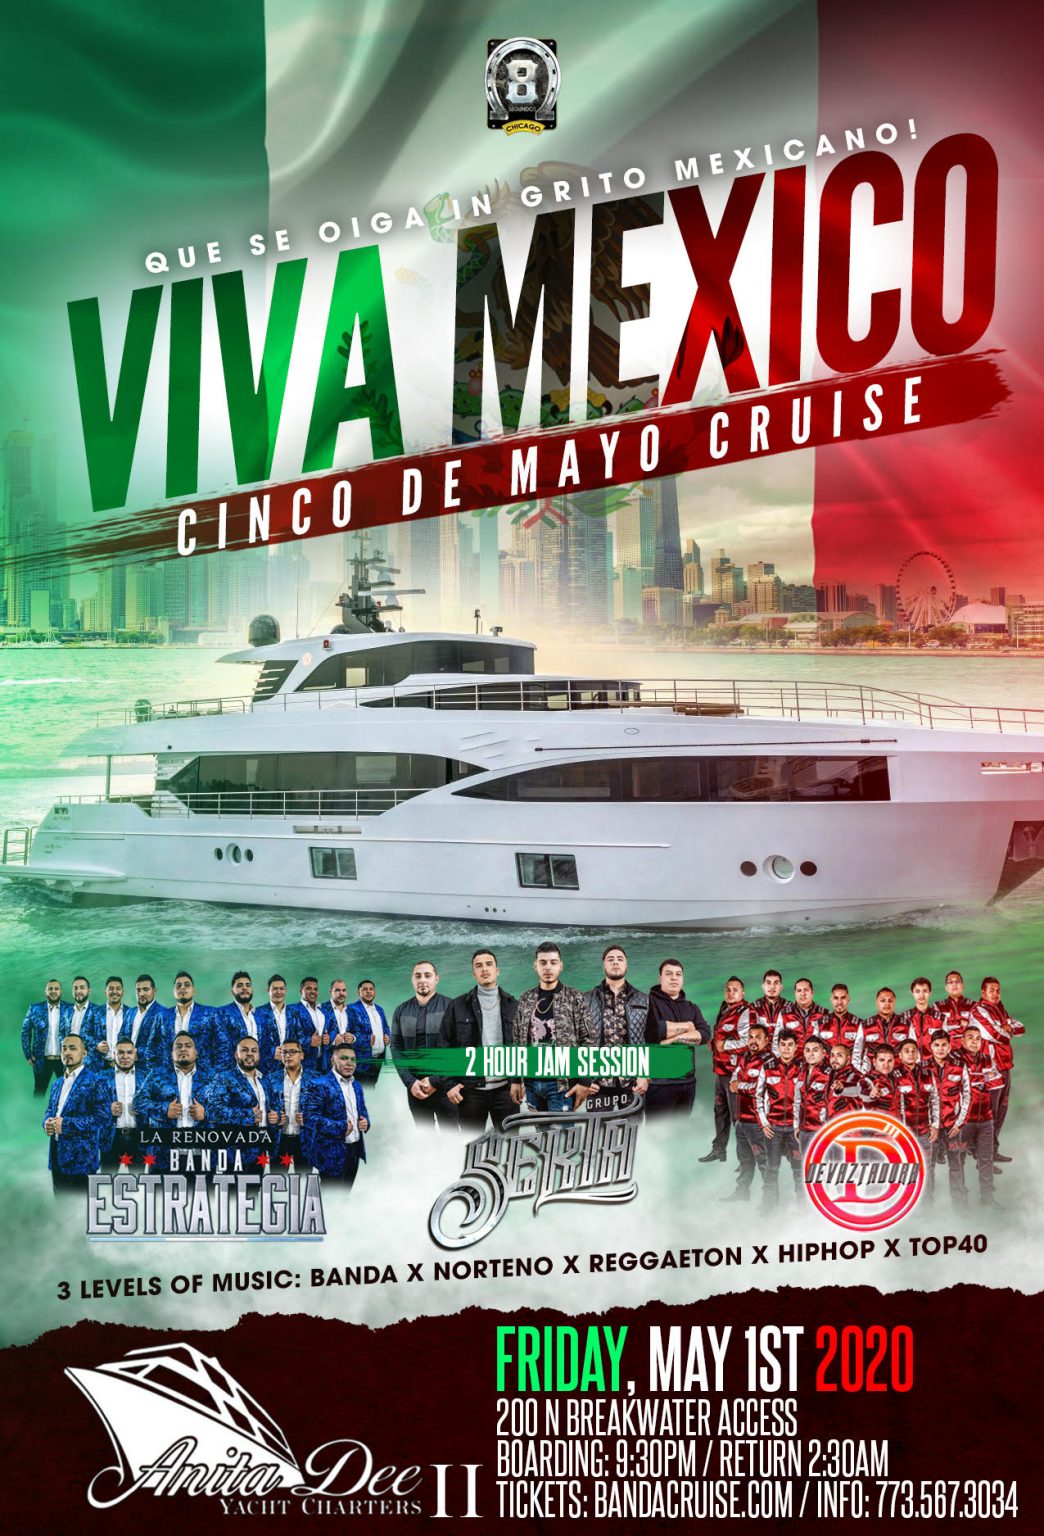 Viva Mexico Cinco De Mayo Cruise 8segundos Chicago